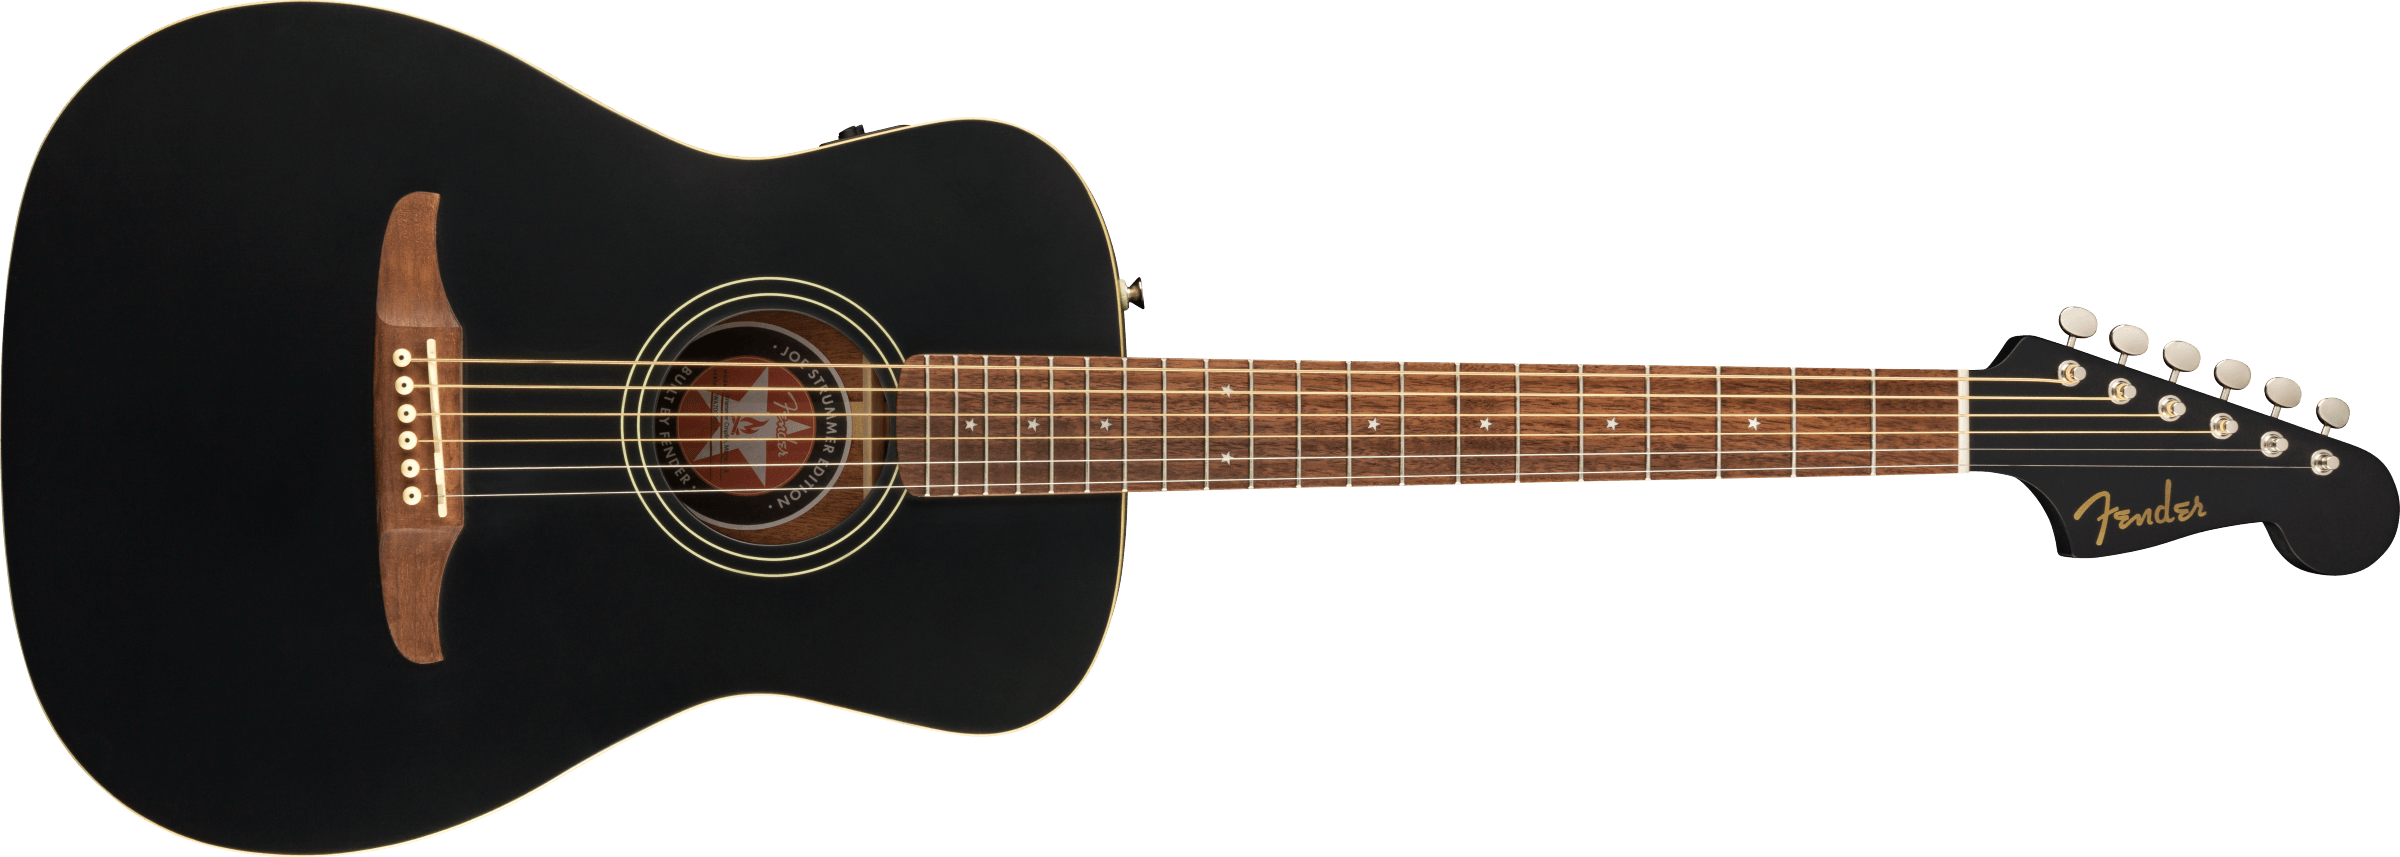 Fender Joe Strummer Campfire Acoustic Guitar, Matte Black